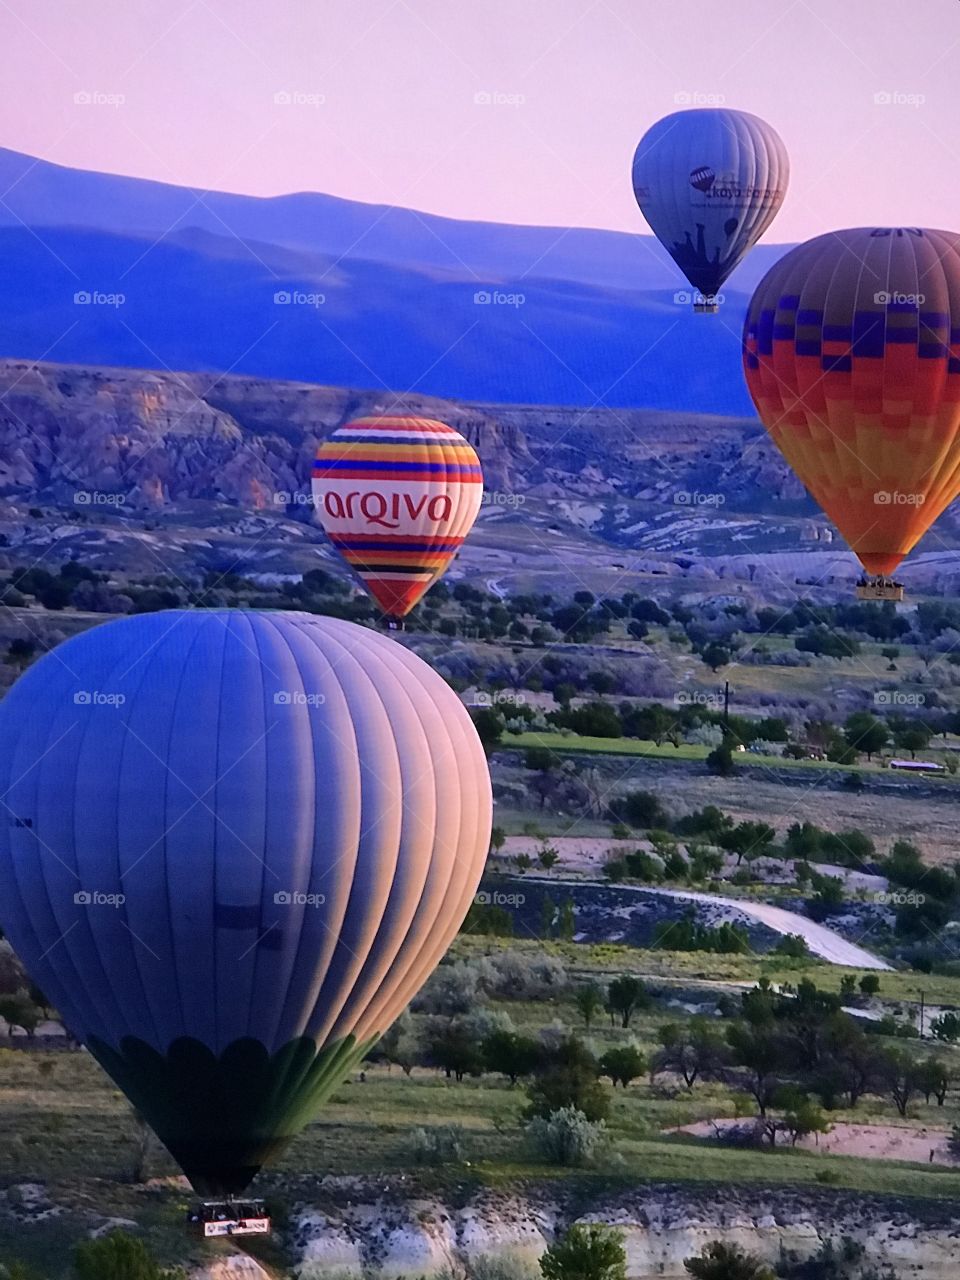 Balloon Festivals Turkey